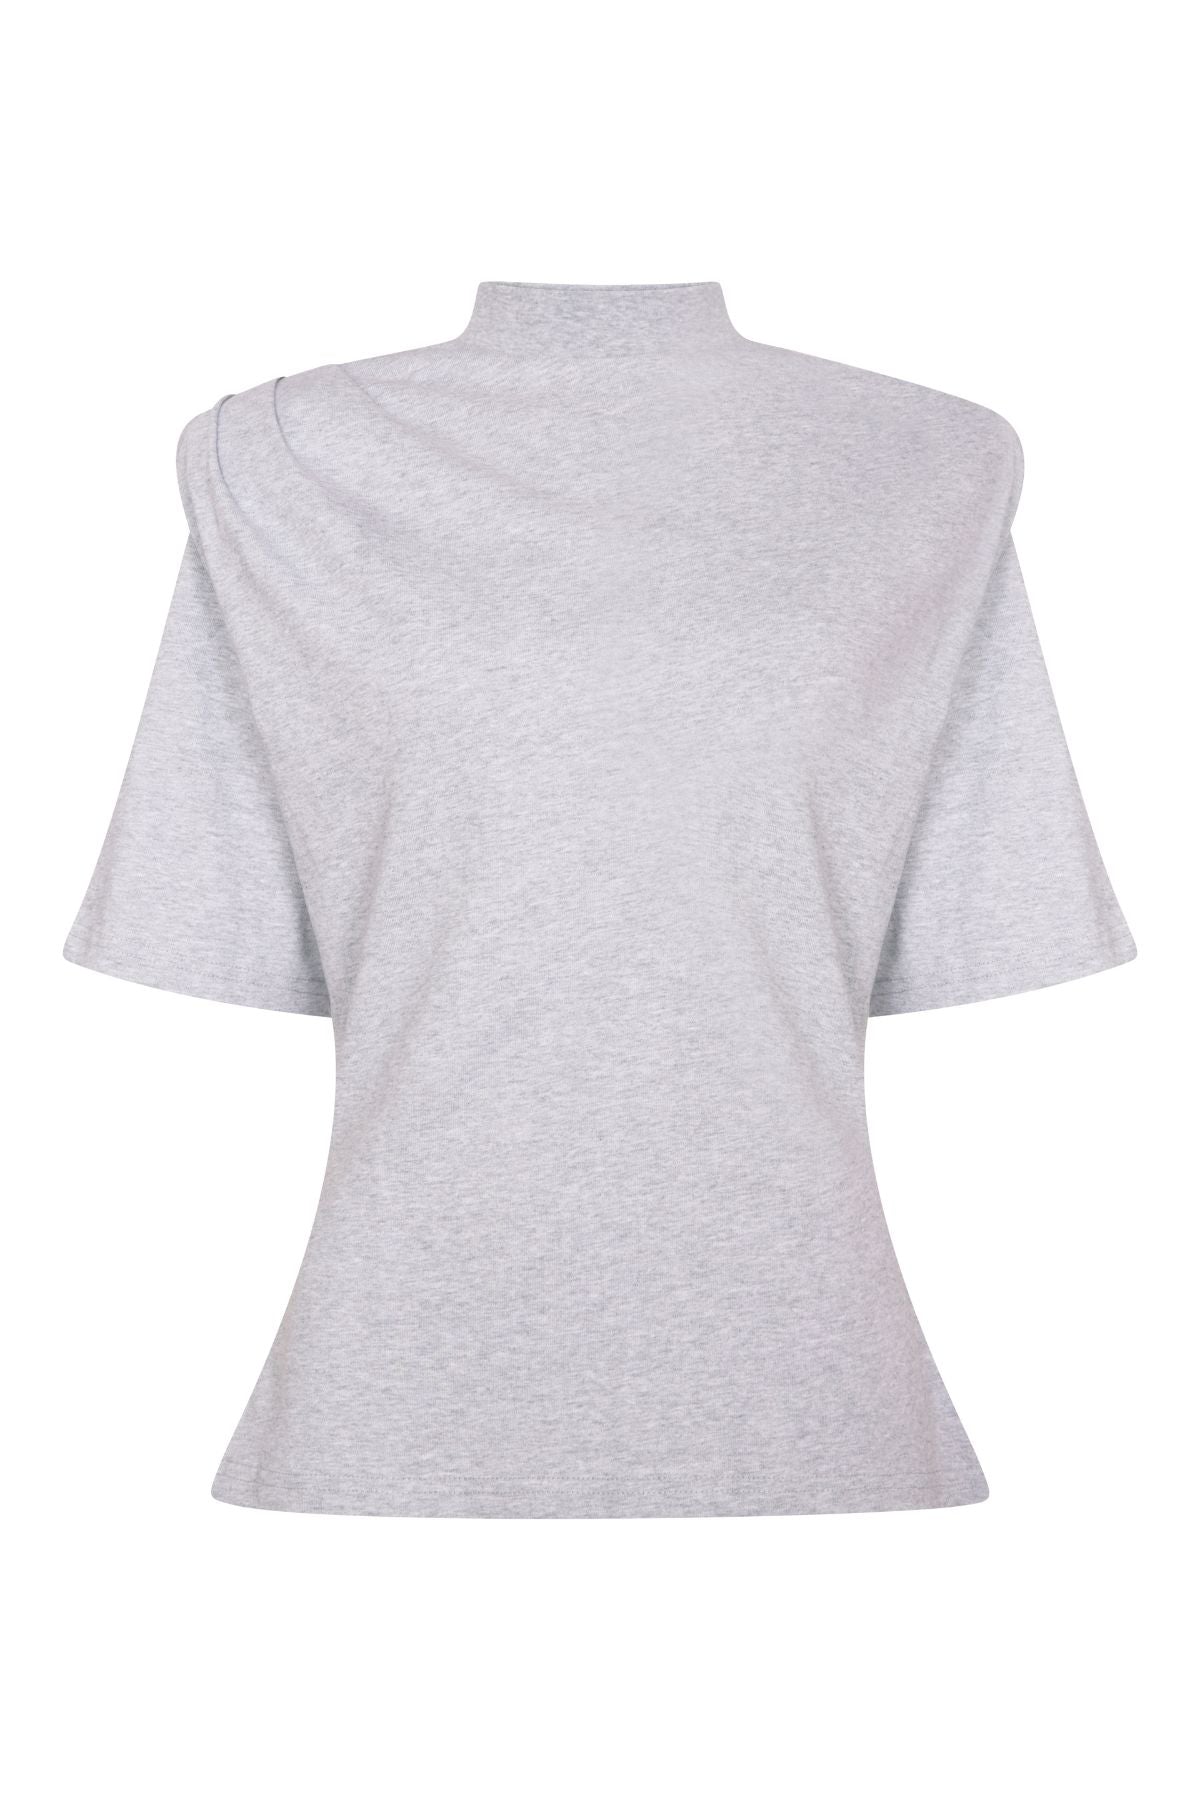 MOLLY Grey Marl Shoulder Pad T-Shirt